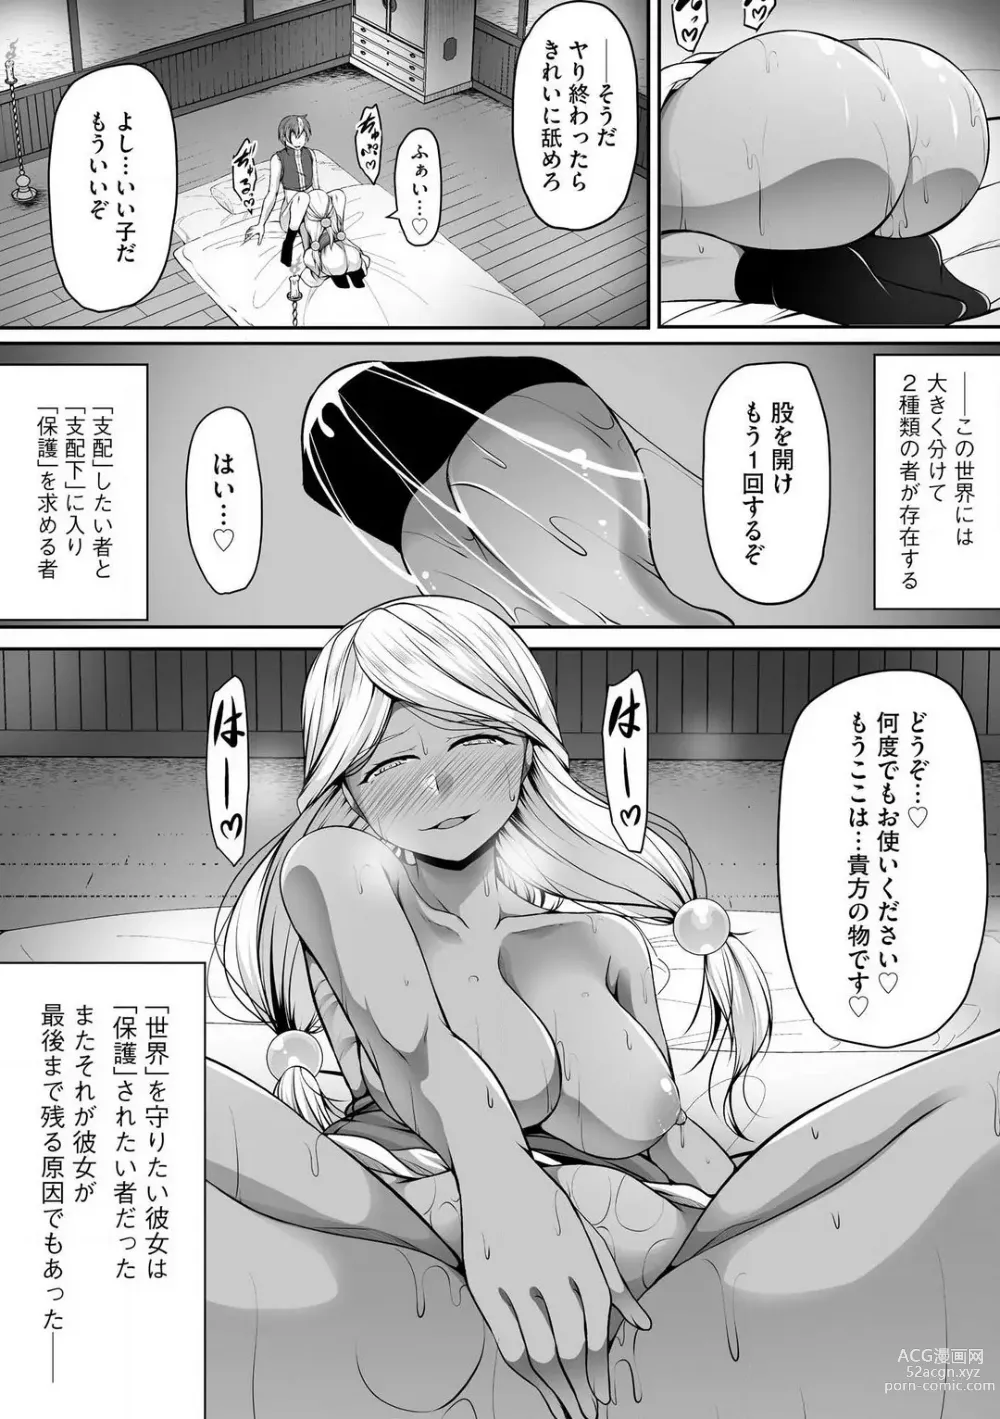 Page 334 of manga Cheat Skill Shihai